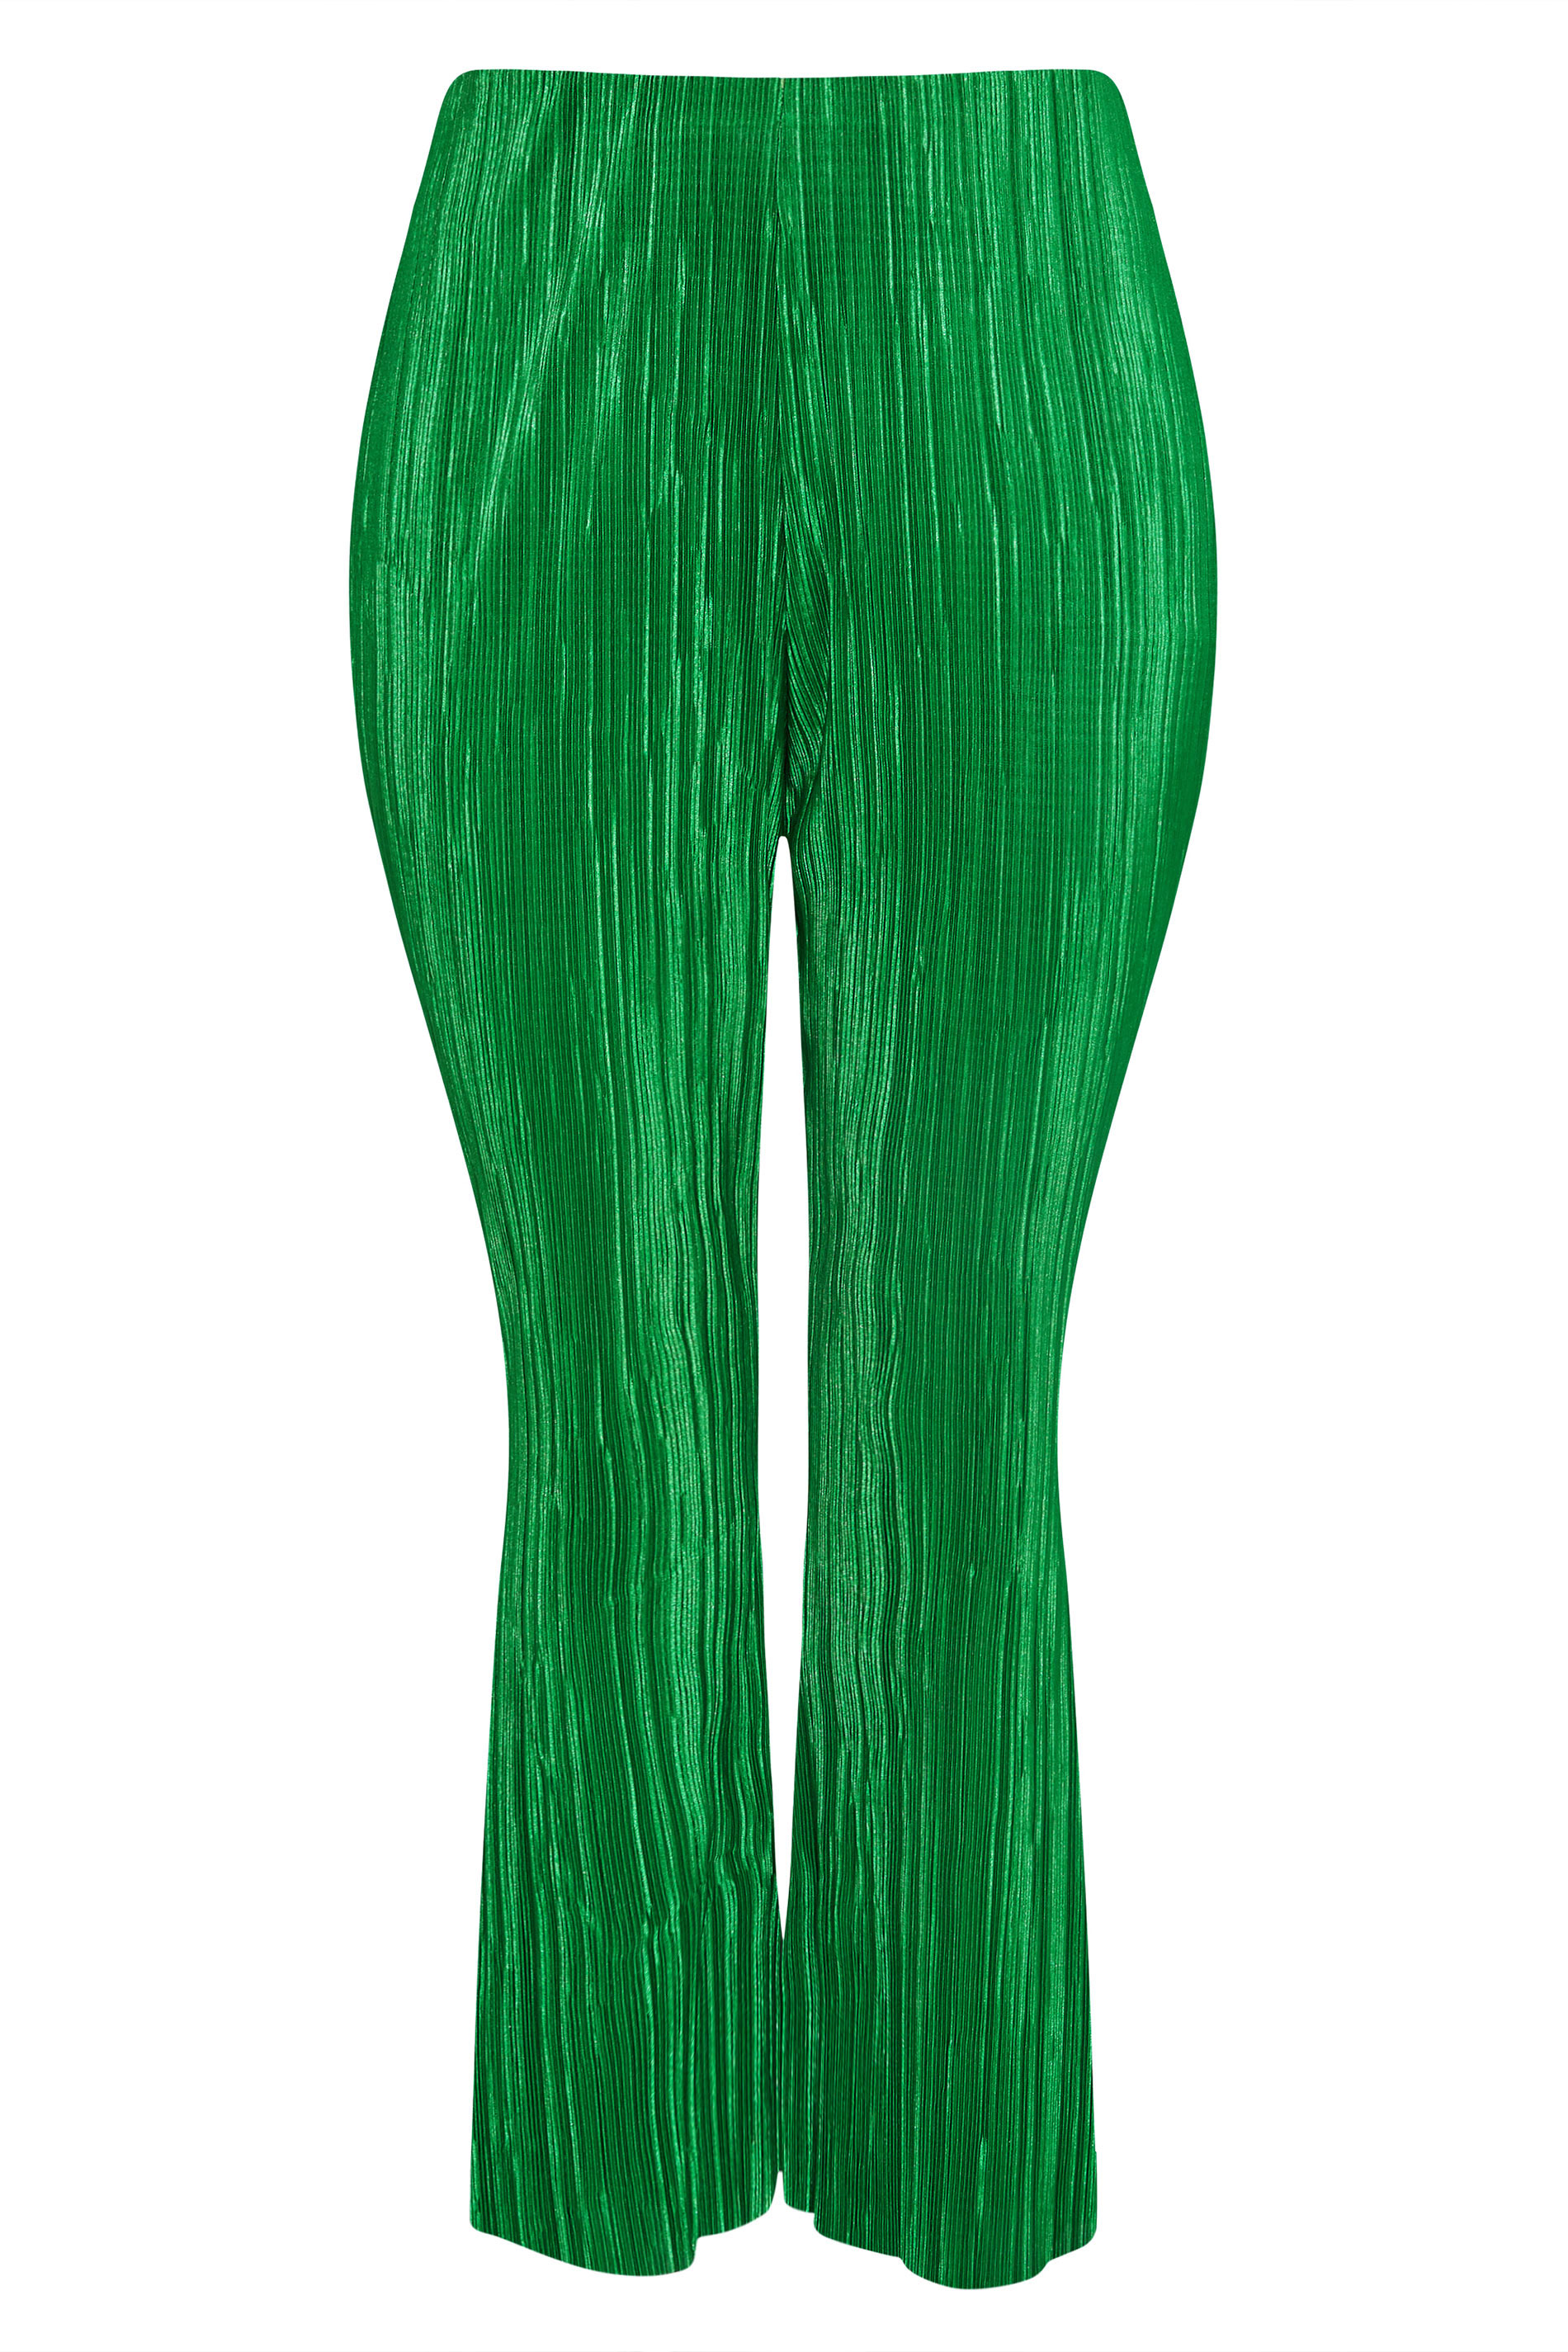 Grande taille  Pantalons Grande taille  Pantalons Larges, Wide Leg | LIMITED COLLECTION - Pantalon Vert Design Ample Plissé - MV31186